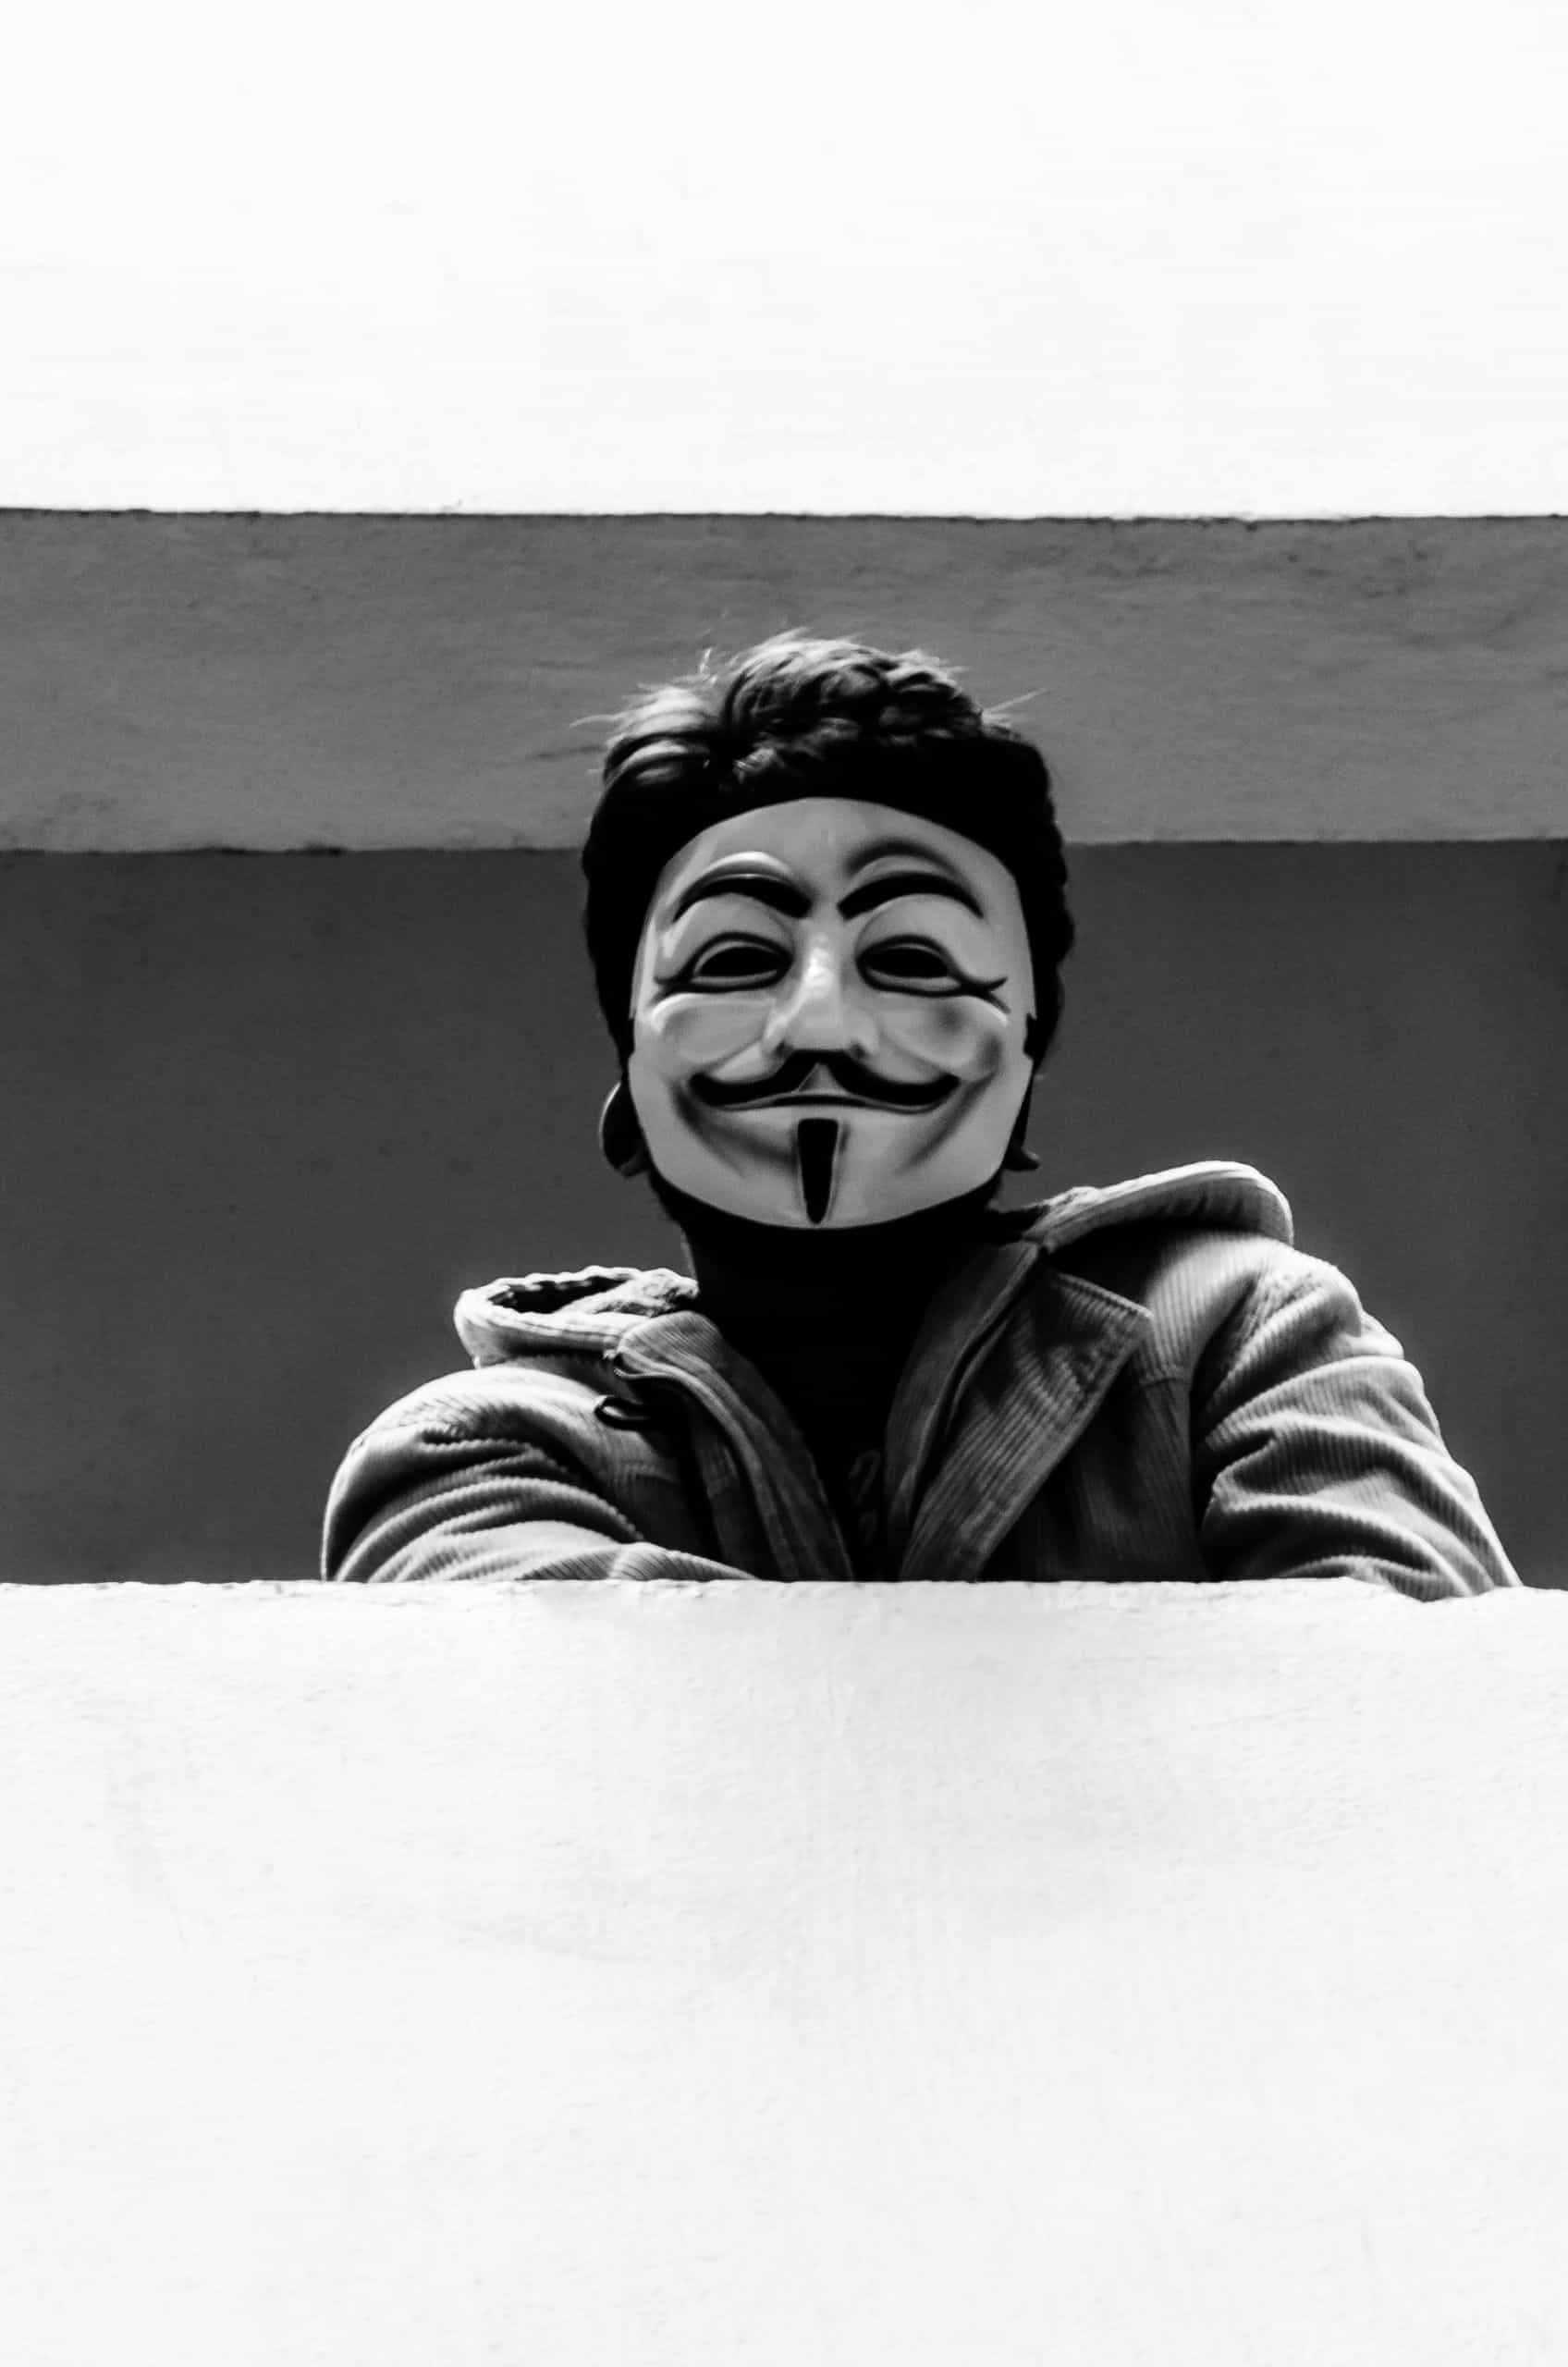 V for Vendetta | Inspiration